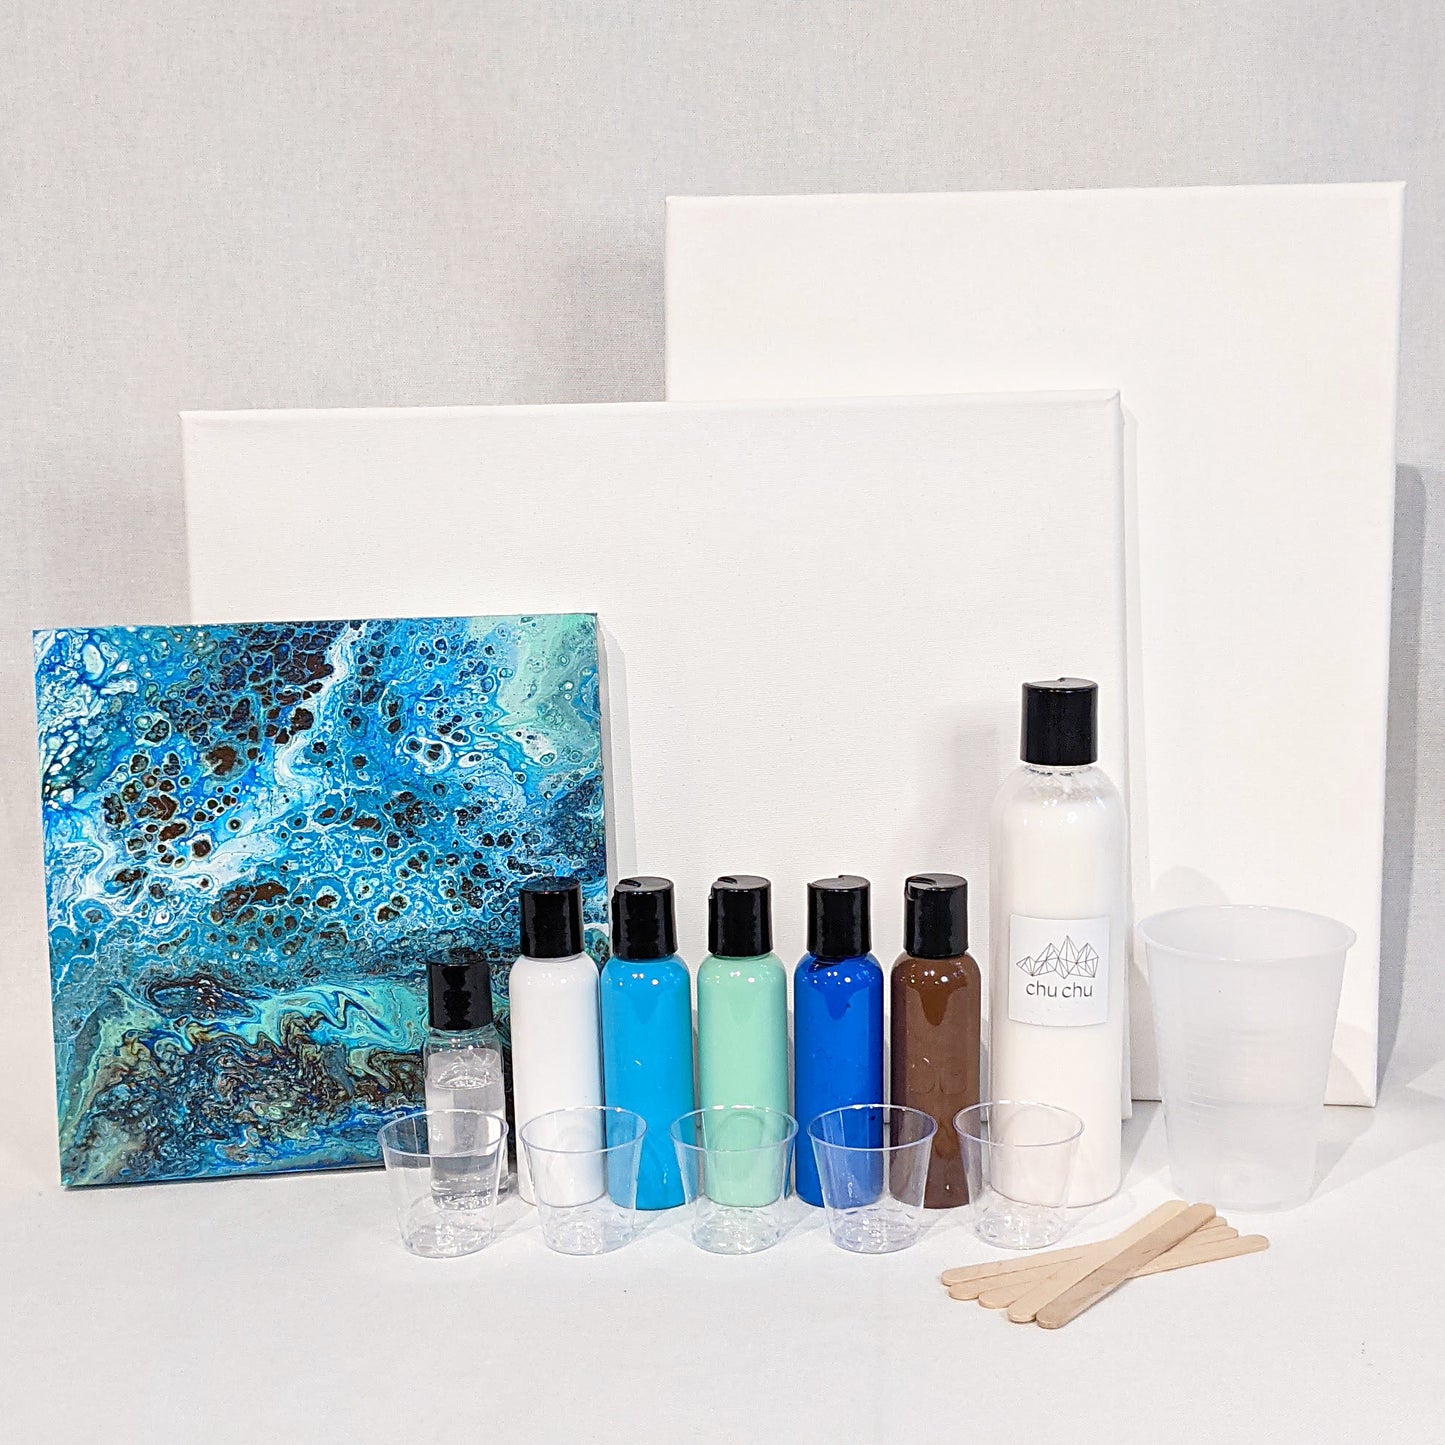 Fluid Pour Painting DIY Art Kit - Pacific Ocean